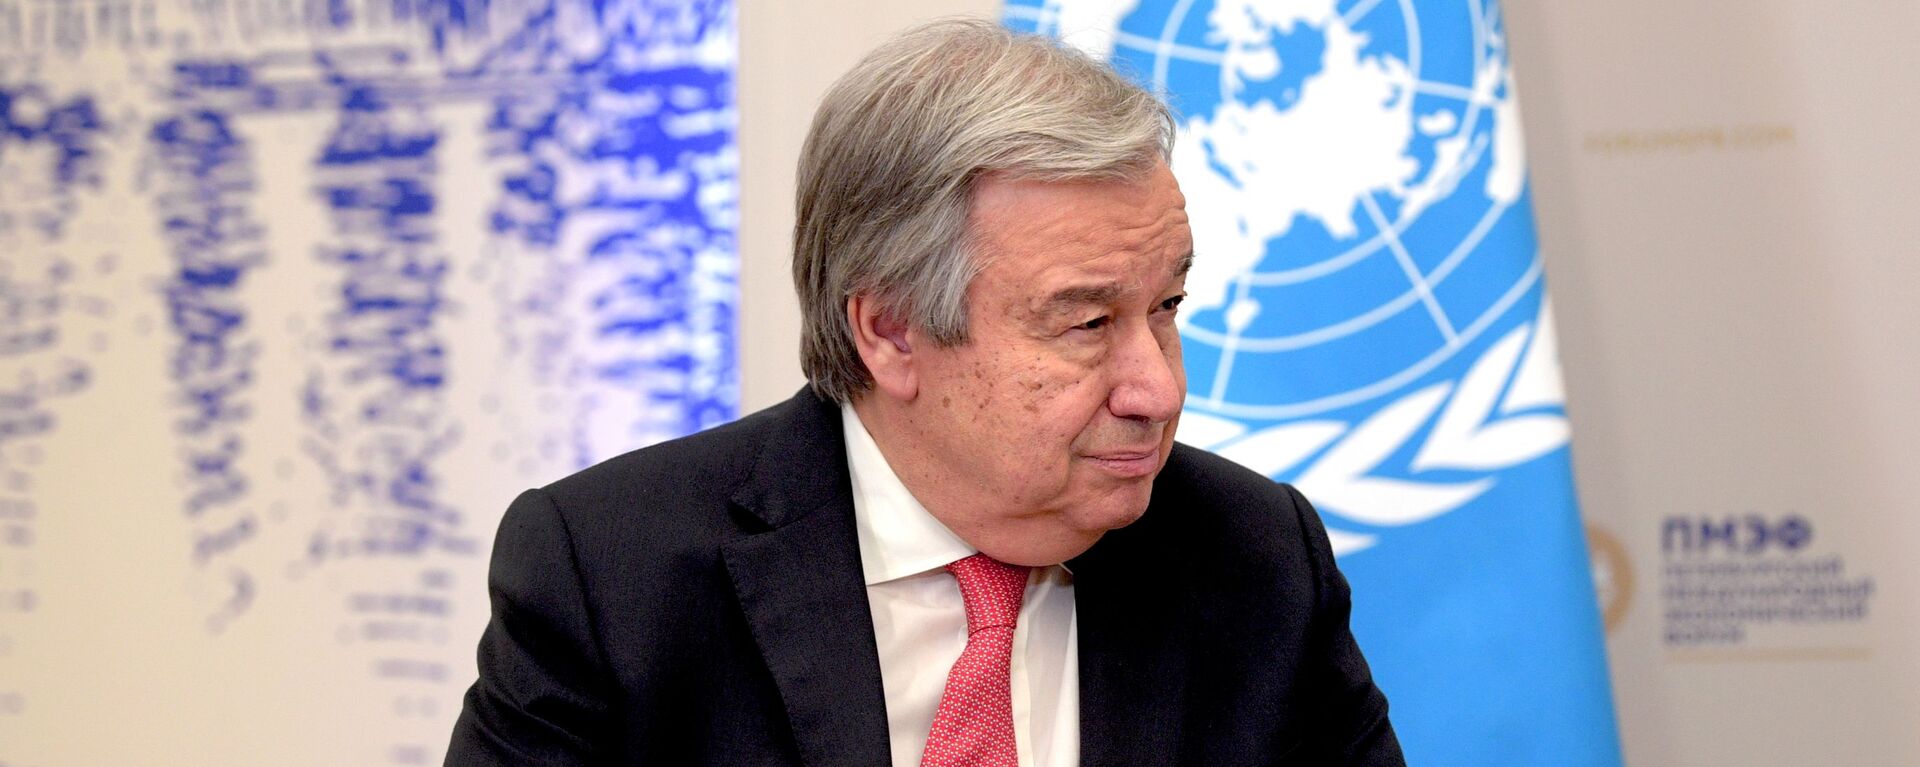 El secretario general de la ONU, António Guterres - Sputnik Mundo, 1920, 26.10.2021